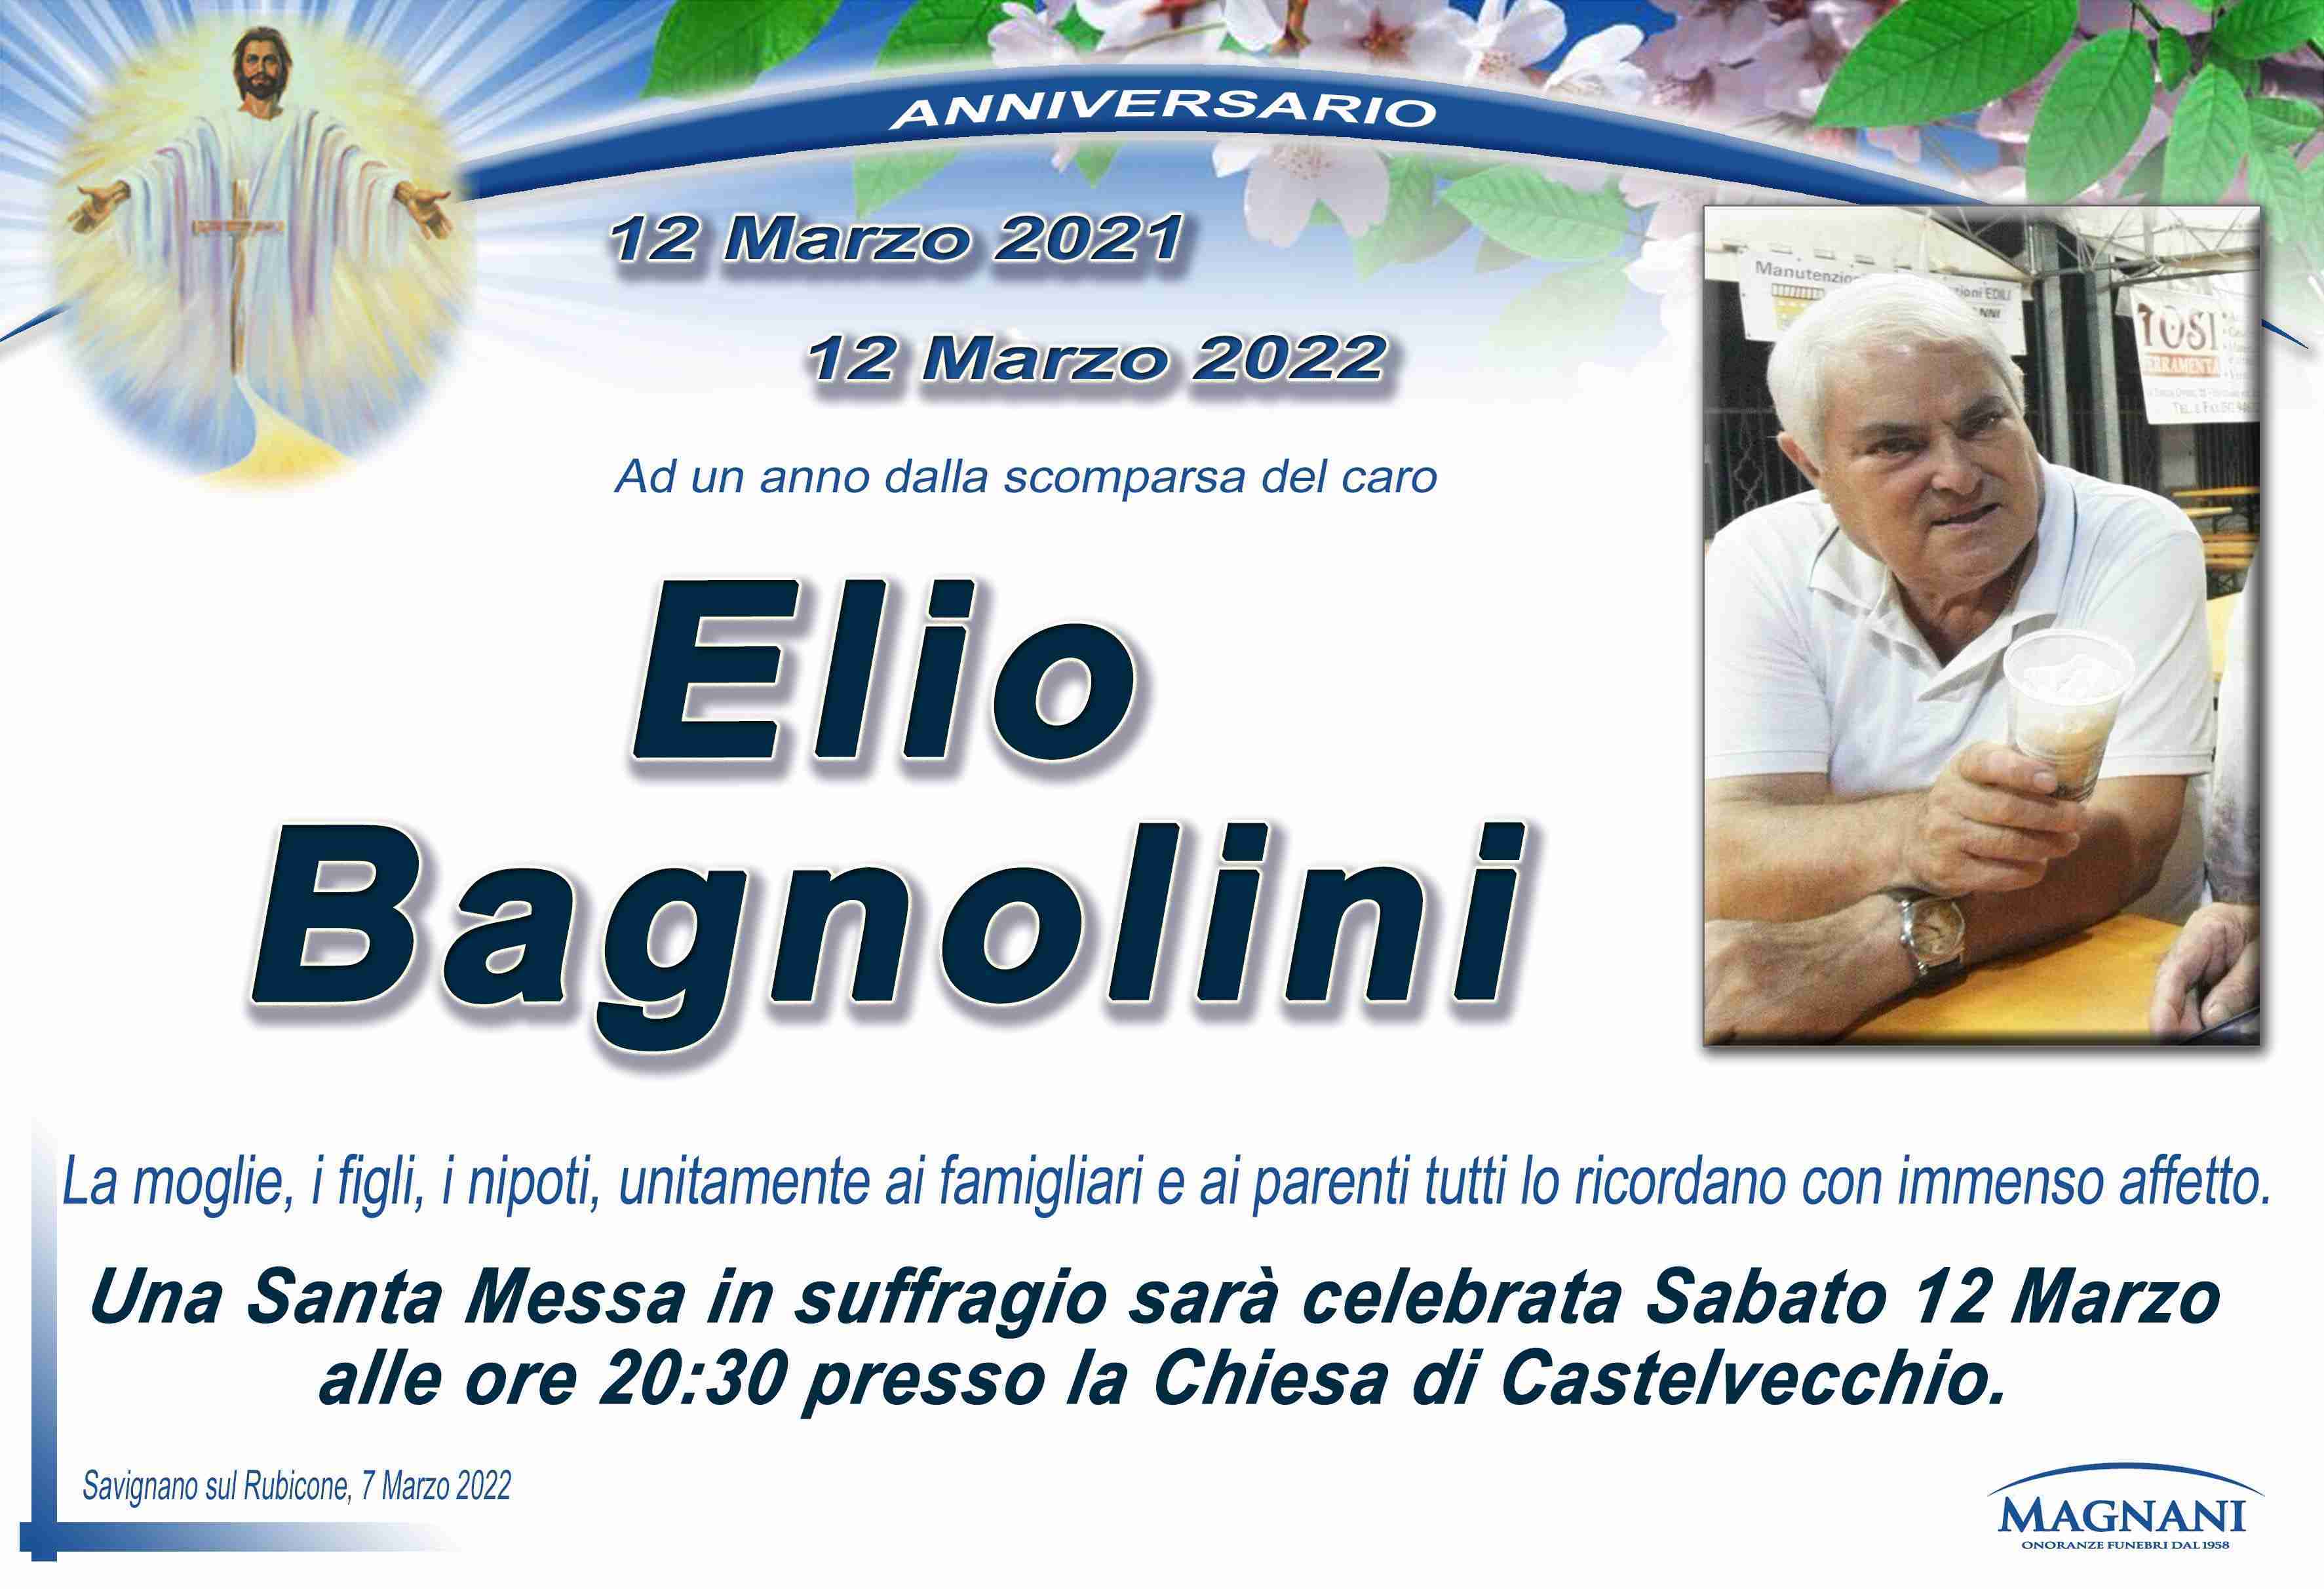 Elio Bagnolini